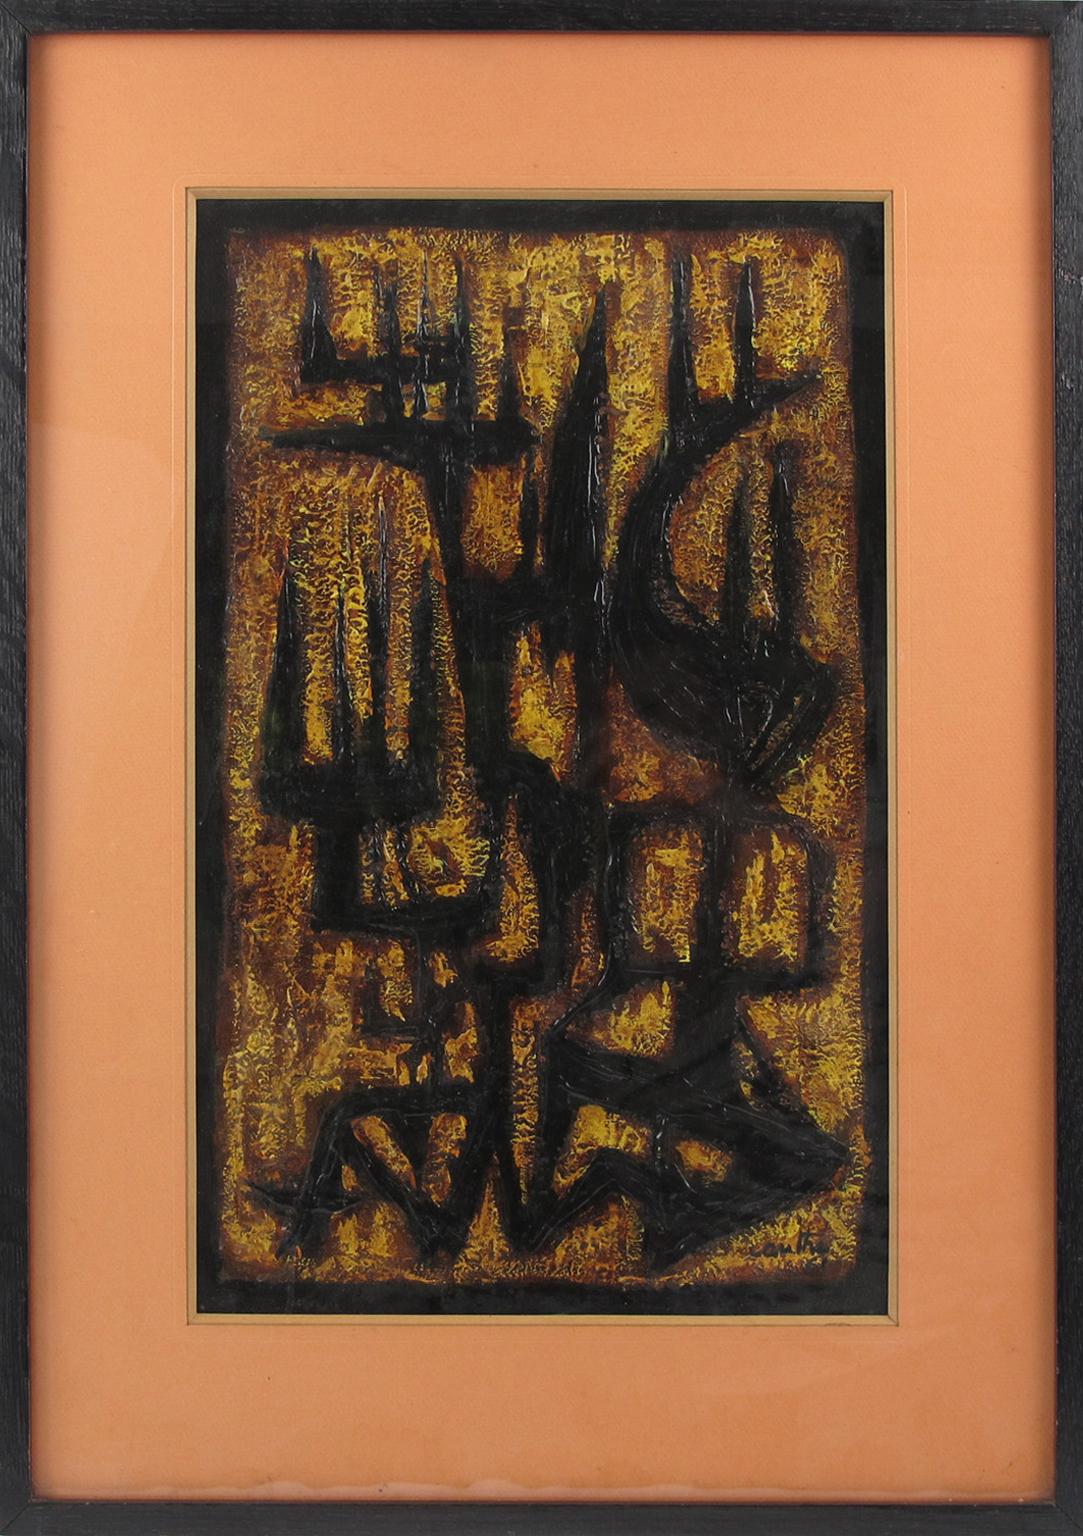 Cette composition abstraite de style moderniste du milieu du siècle est signée par l'artiste américain Canthi et datée de 1961. 
Le design brutaliste aux couleurs noires et brunes contraste avec les tons jaunes et orange de l'arrière-plan. La